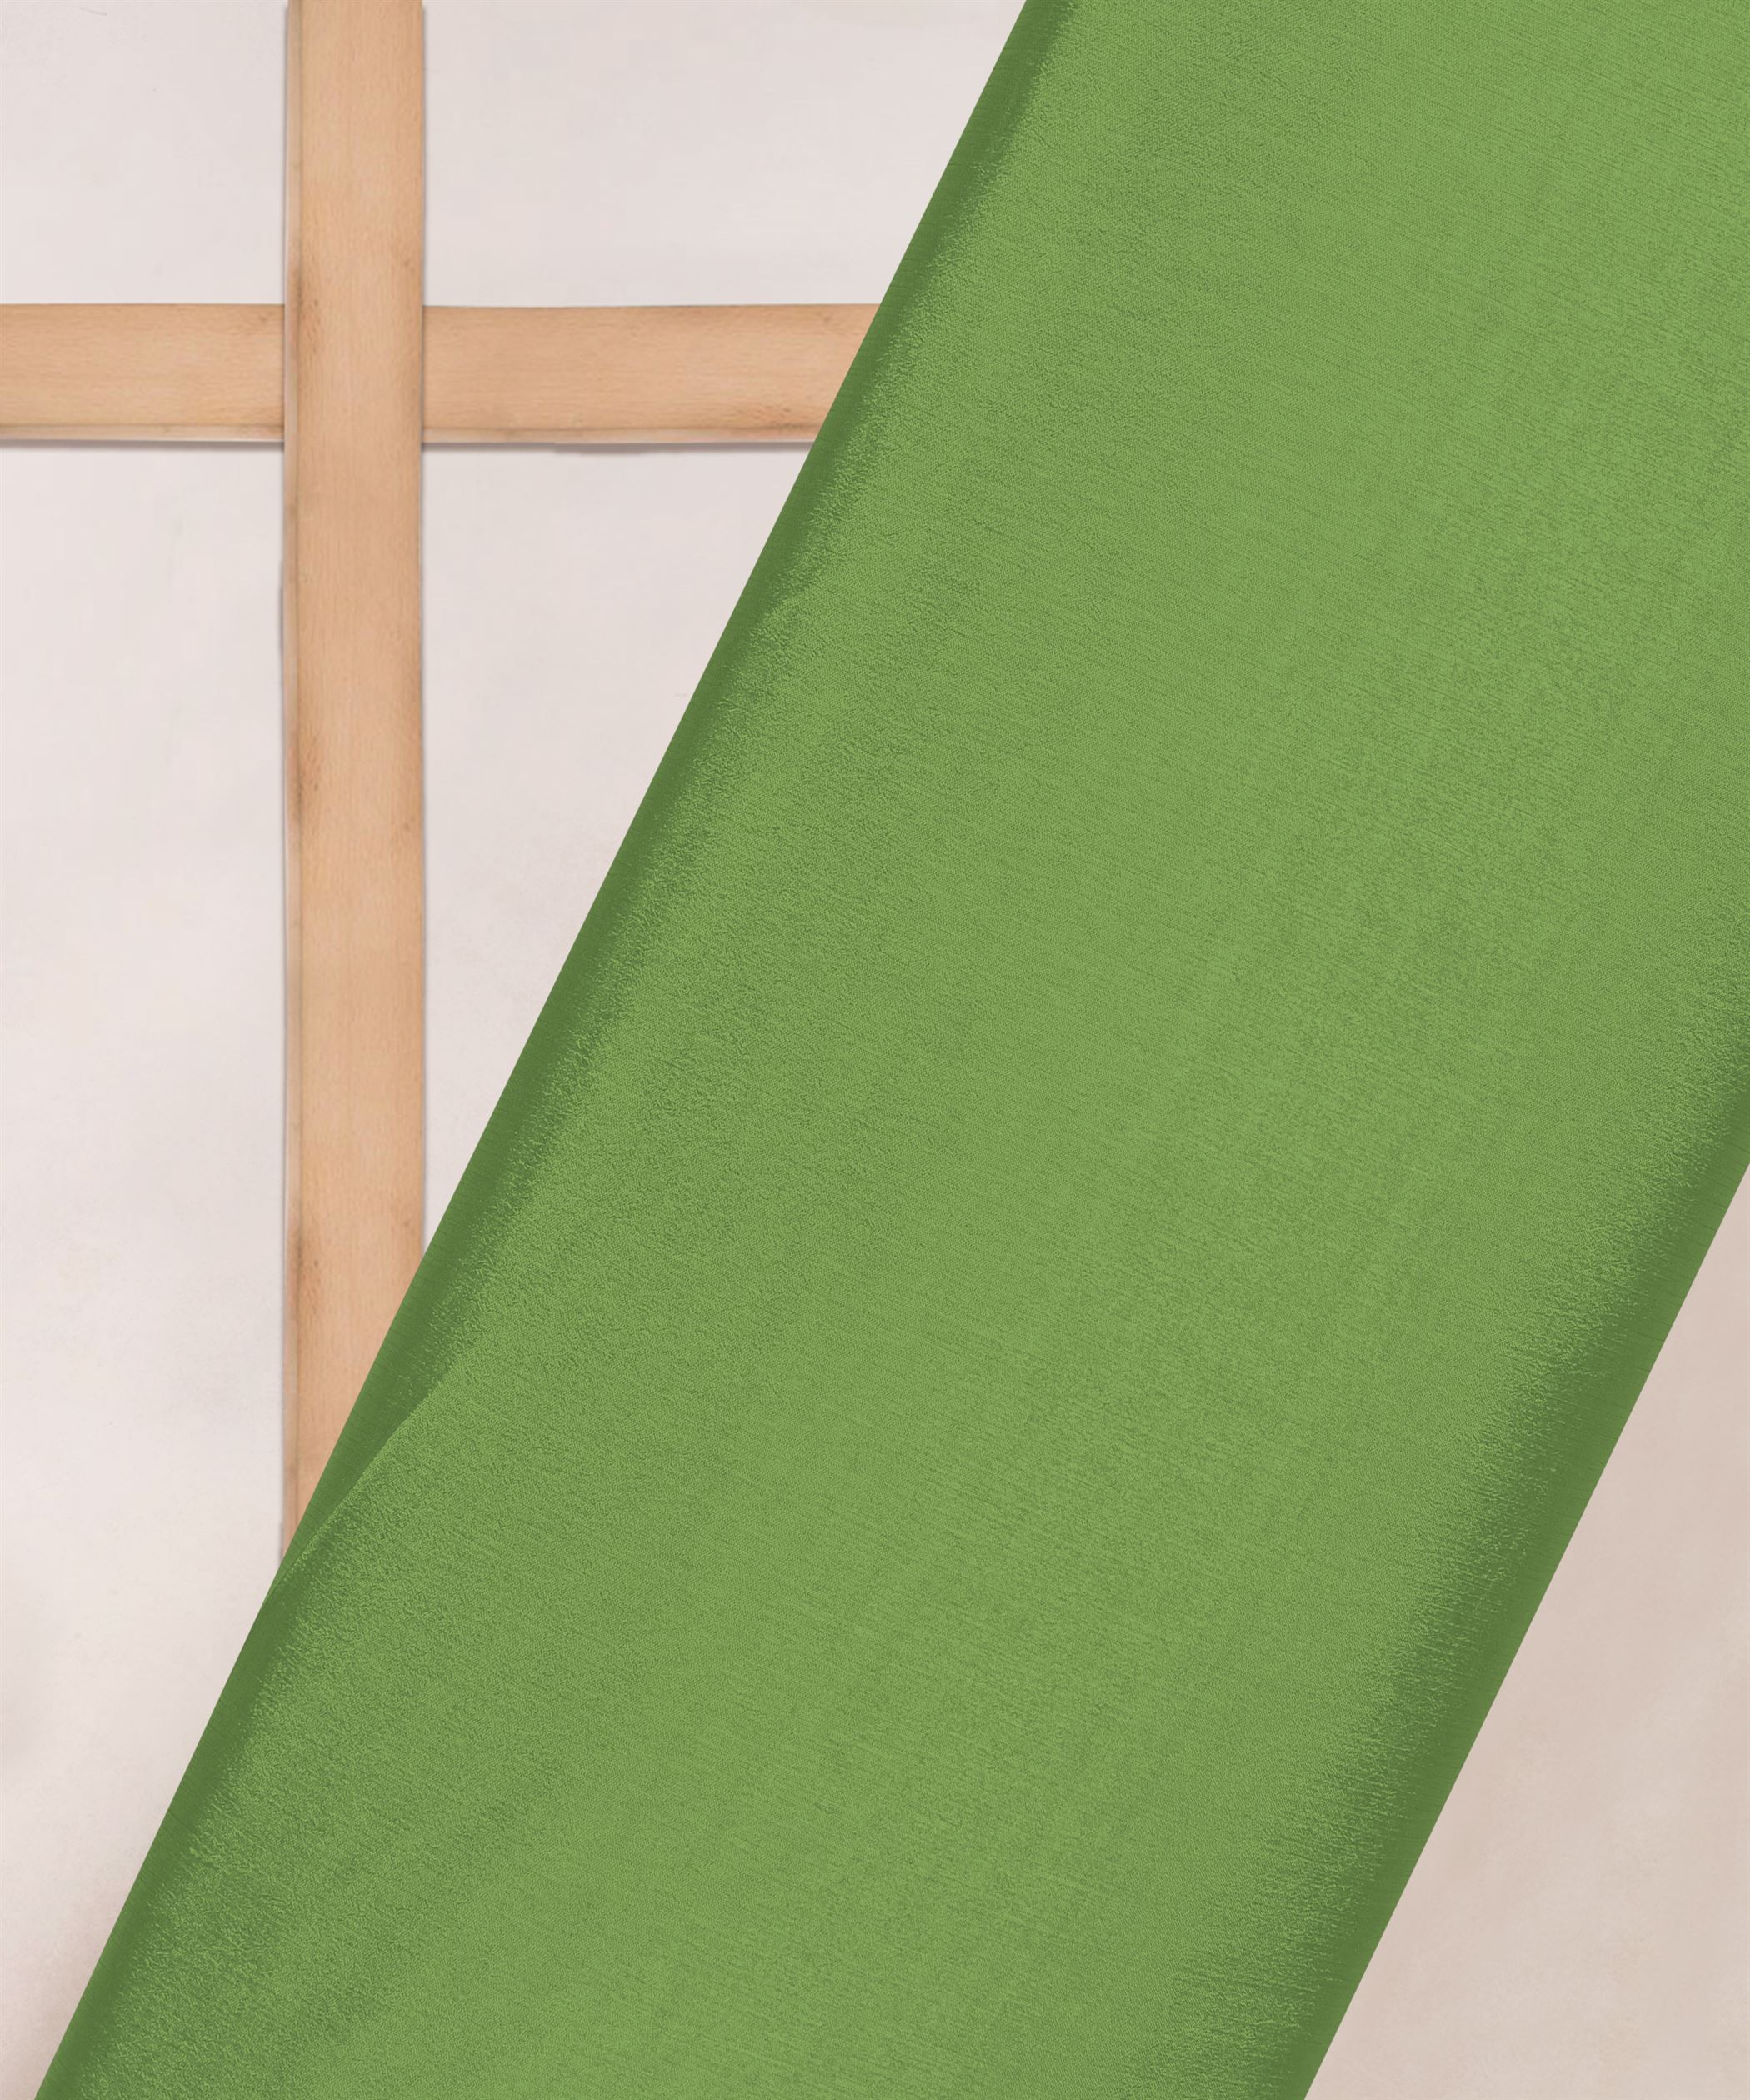 Green Plain Dyed Bright Chiffon Fabric